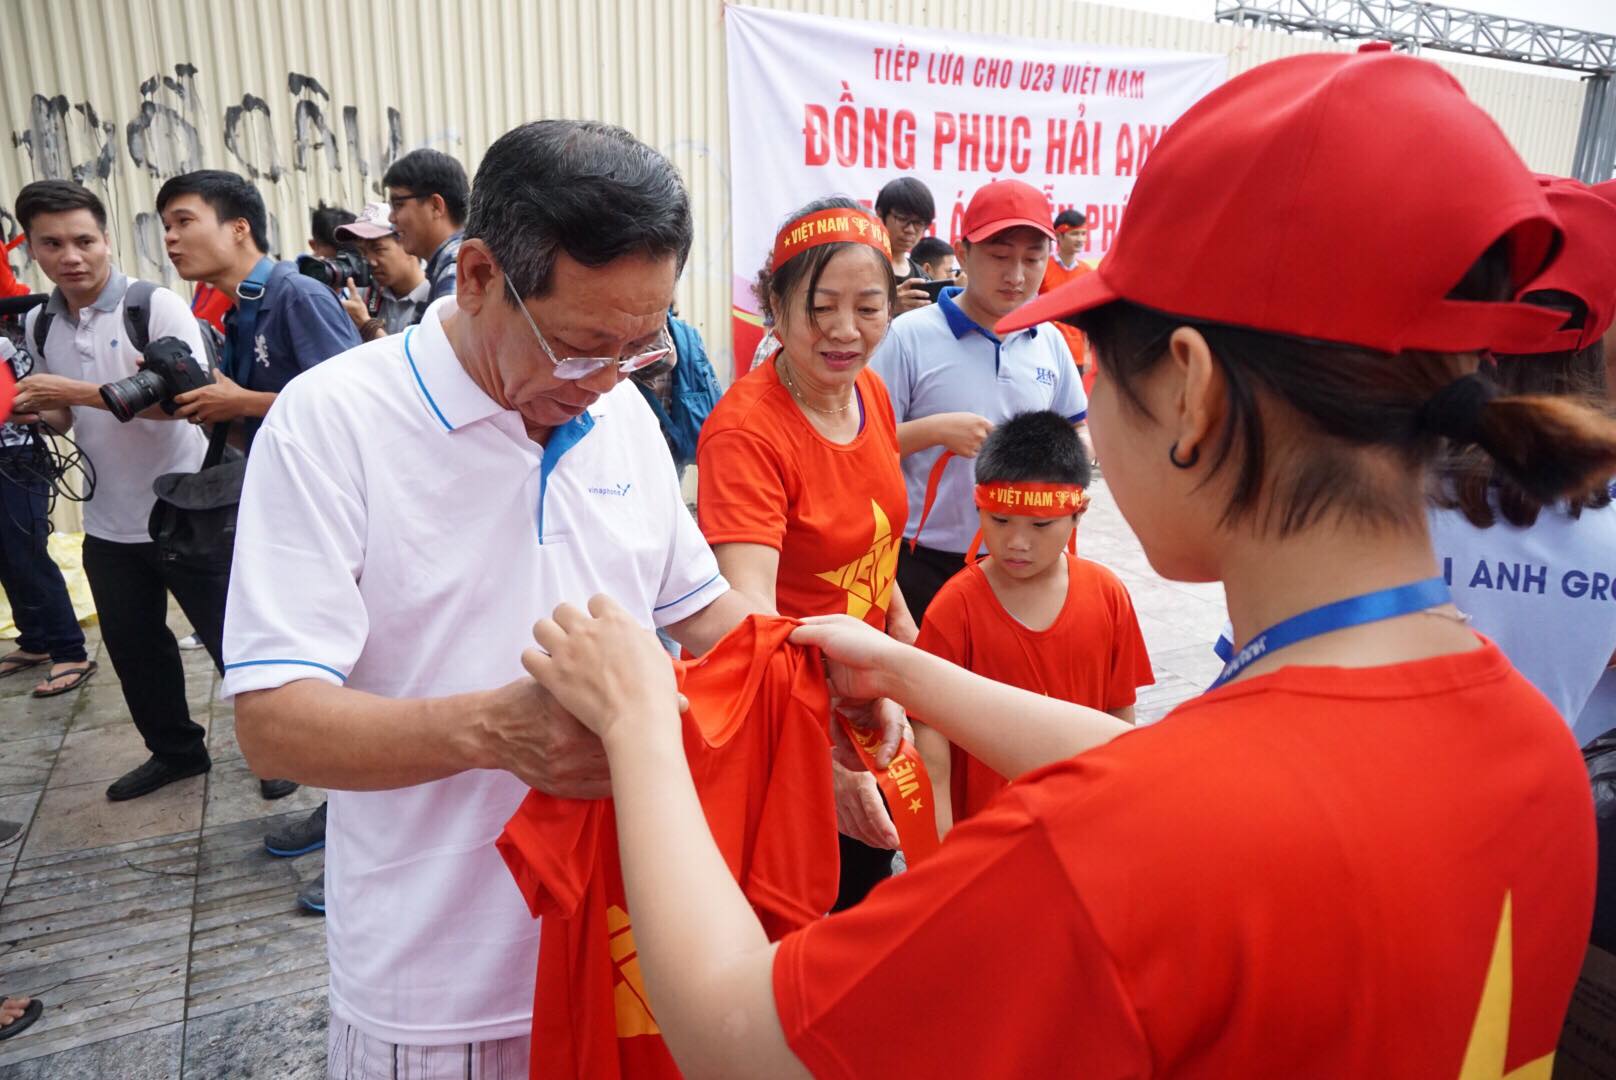 Xếp hàng chờ tặng 1.000 áo phông cờ đỏ sao vàng để cổ vũ Olympic Việt Nam